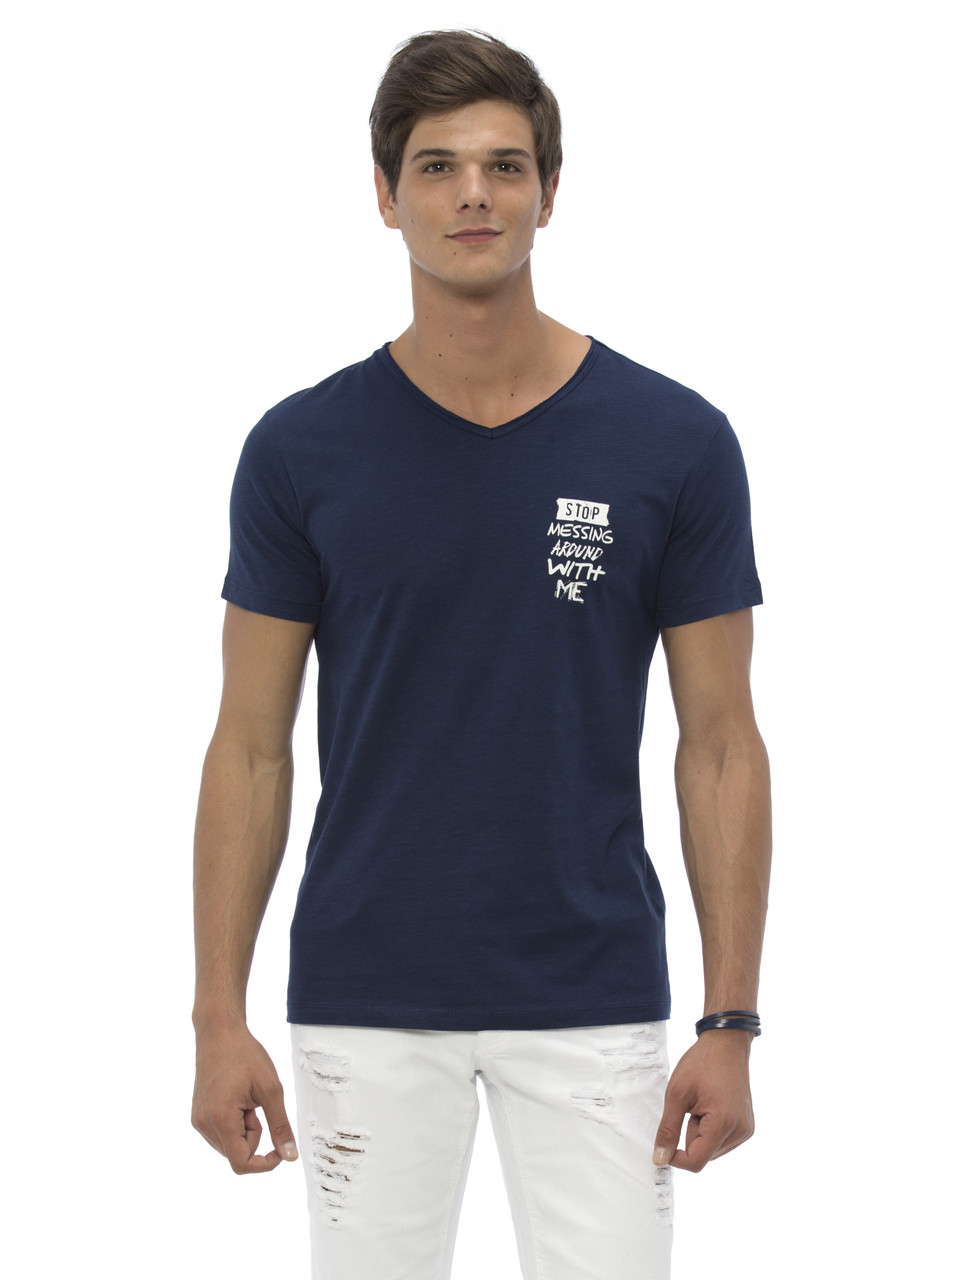 Синя чоловіча футболка LC Waikiki / ЛЗ Вайкікі з білим написом